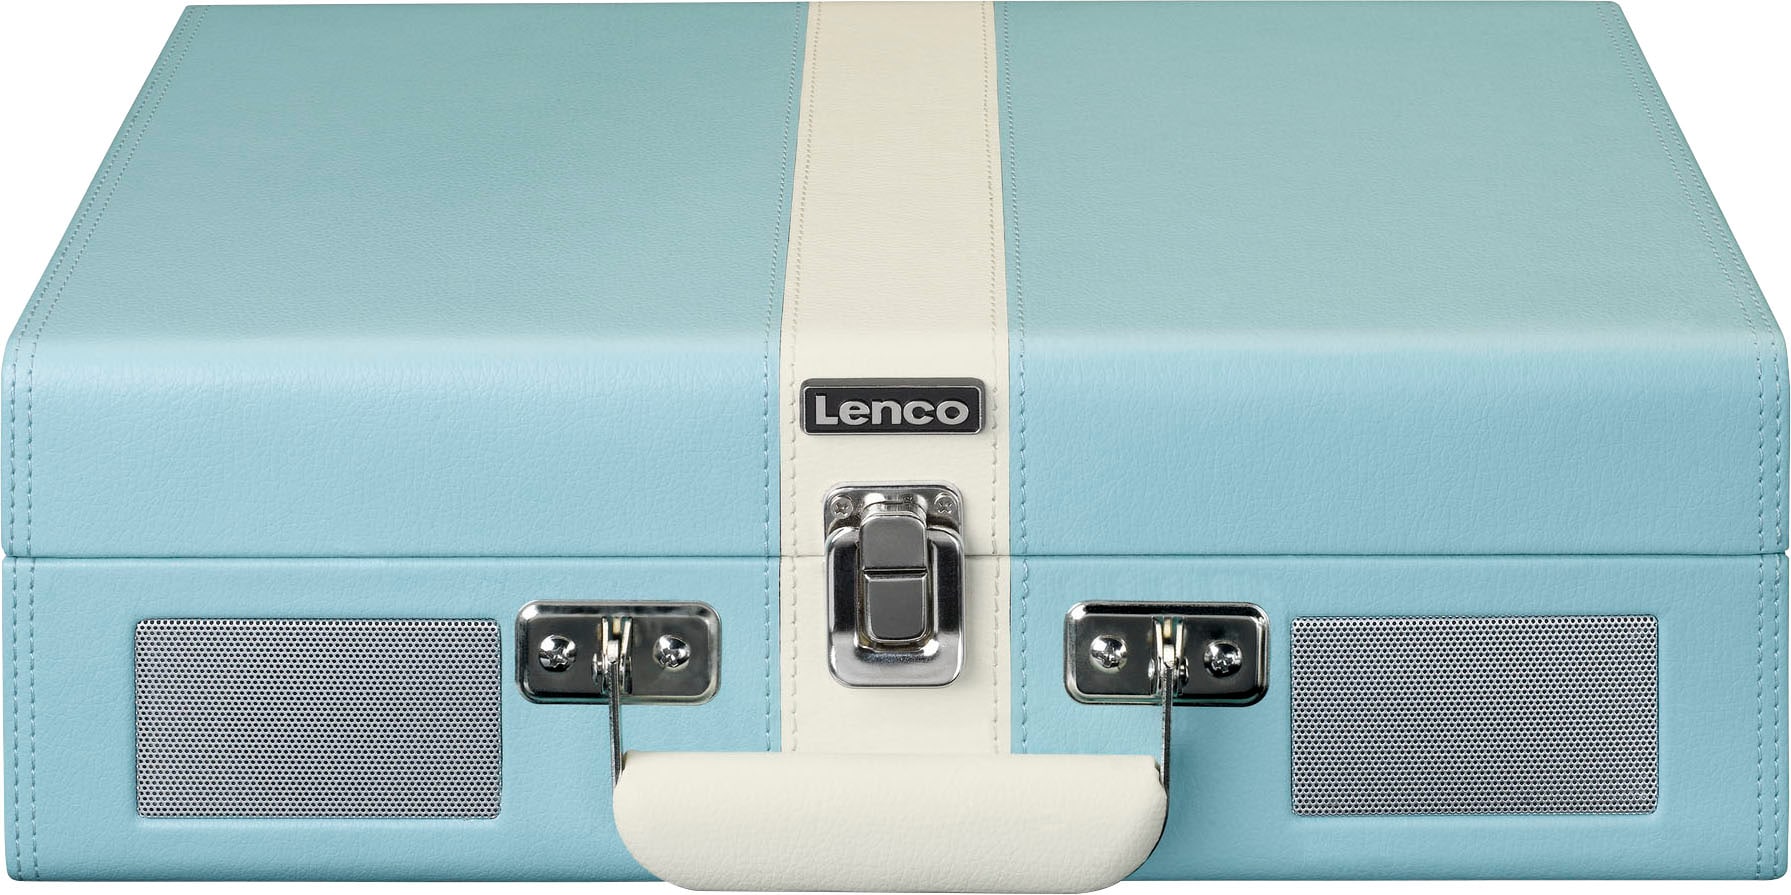 BT mit Raten und bestellen »Koffer-Plattenspieler Lenco Lsp.« eingebauten auf Plattenspieler